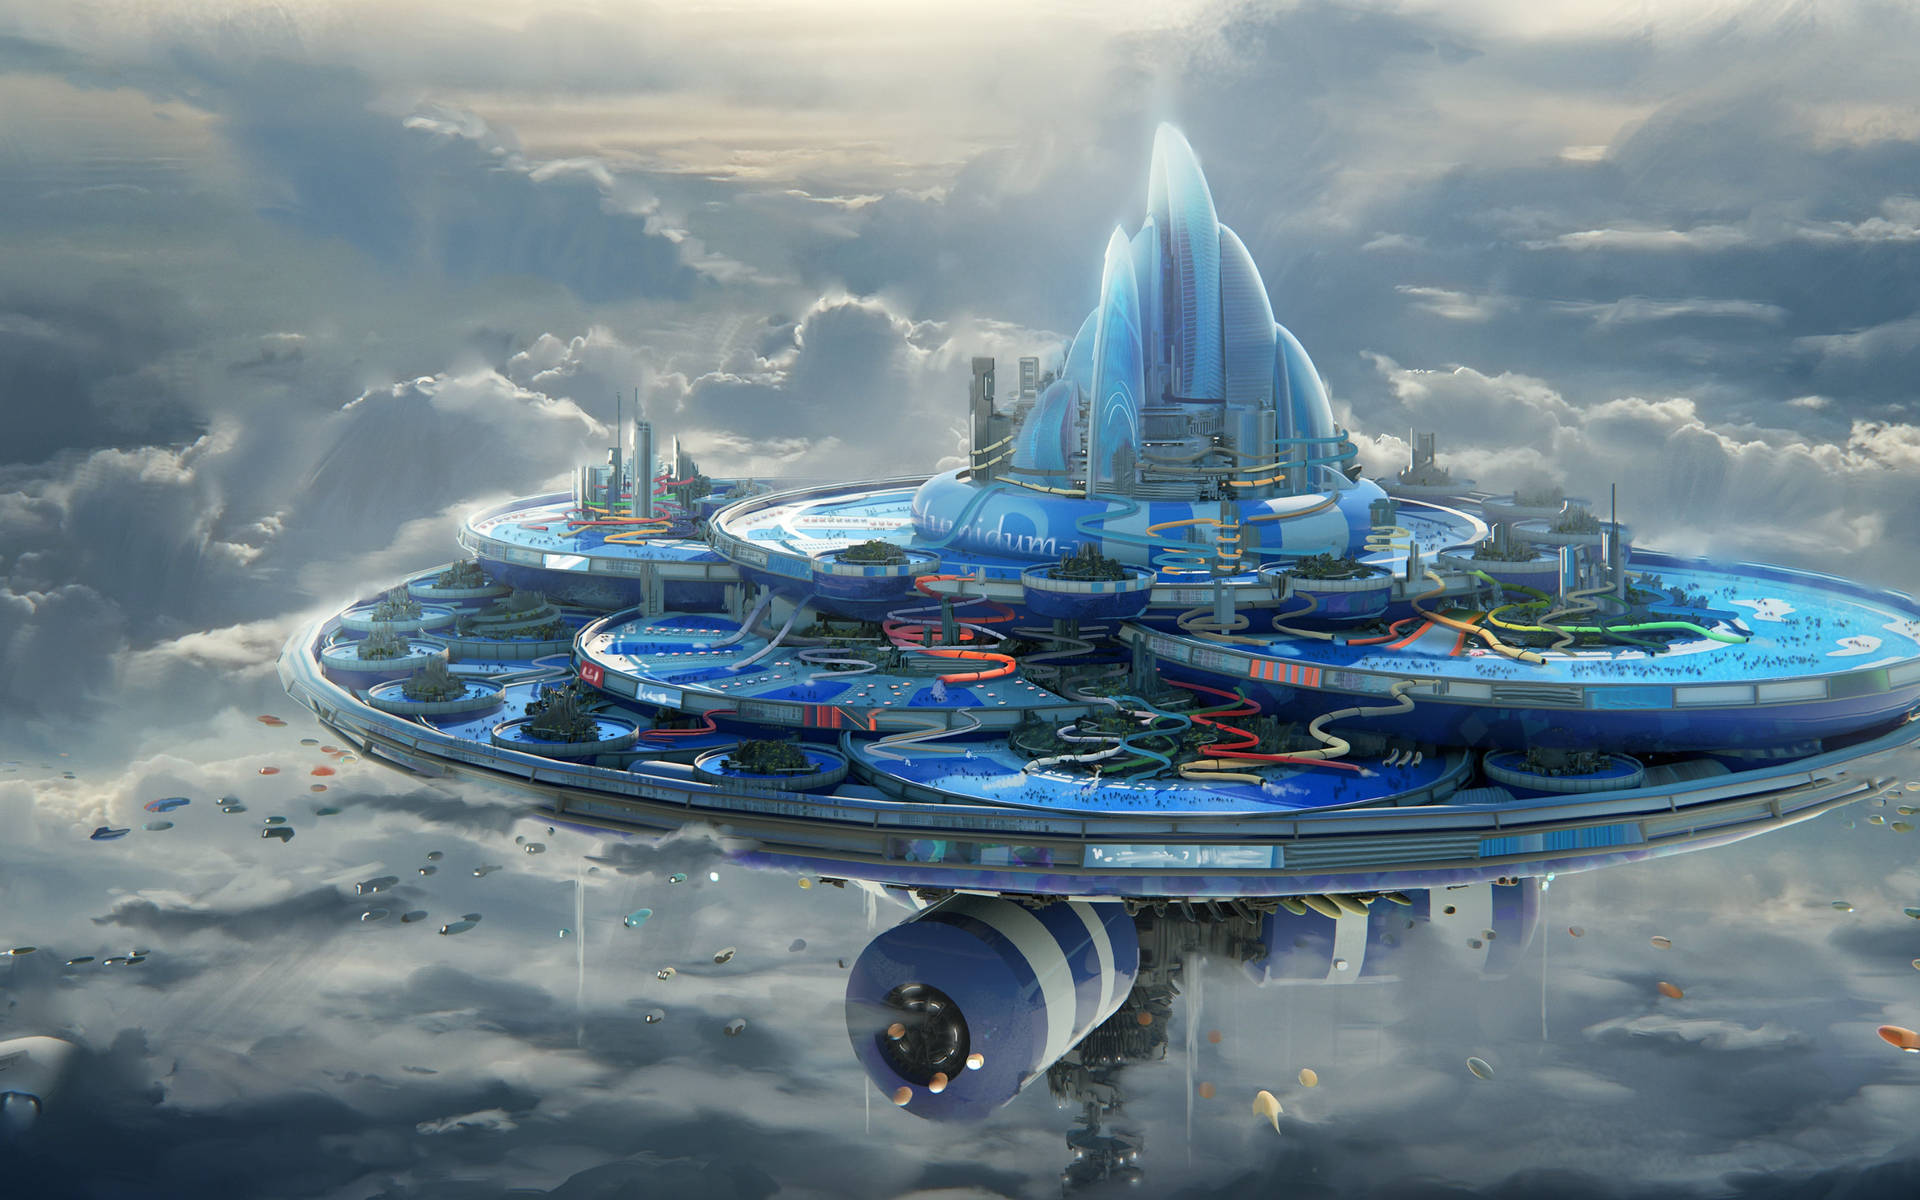 Fantasy Island In Futuristic Style